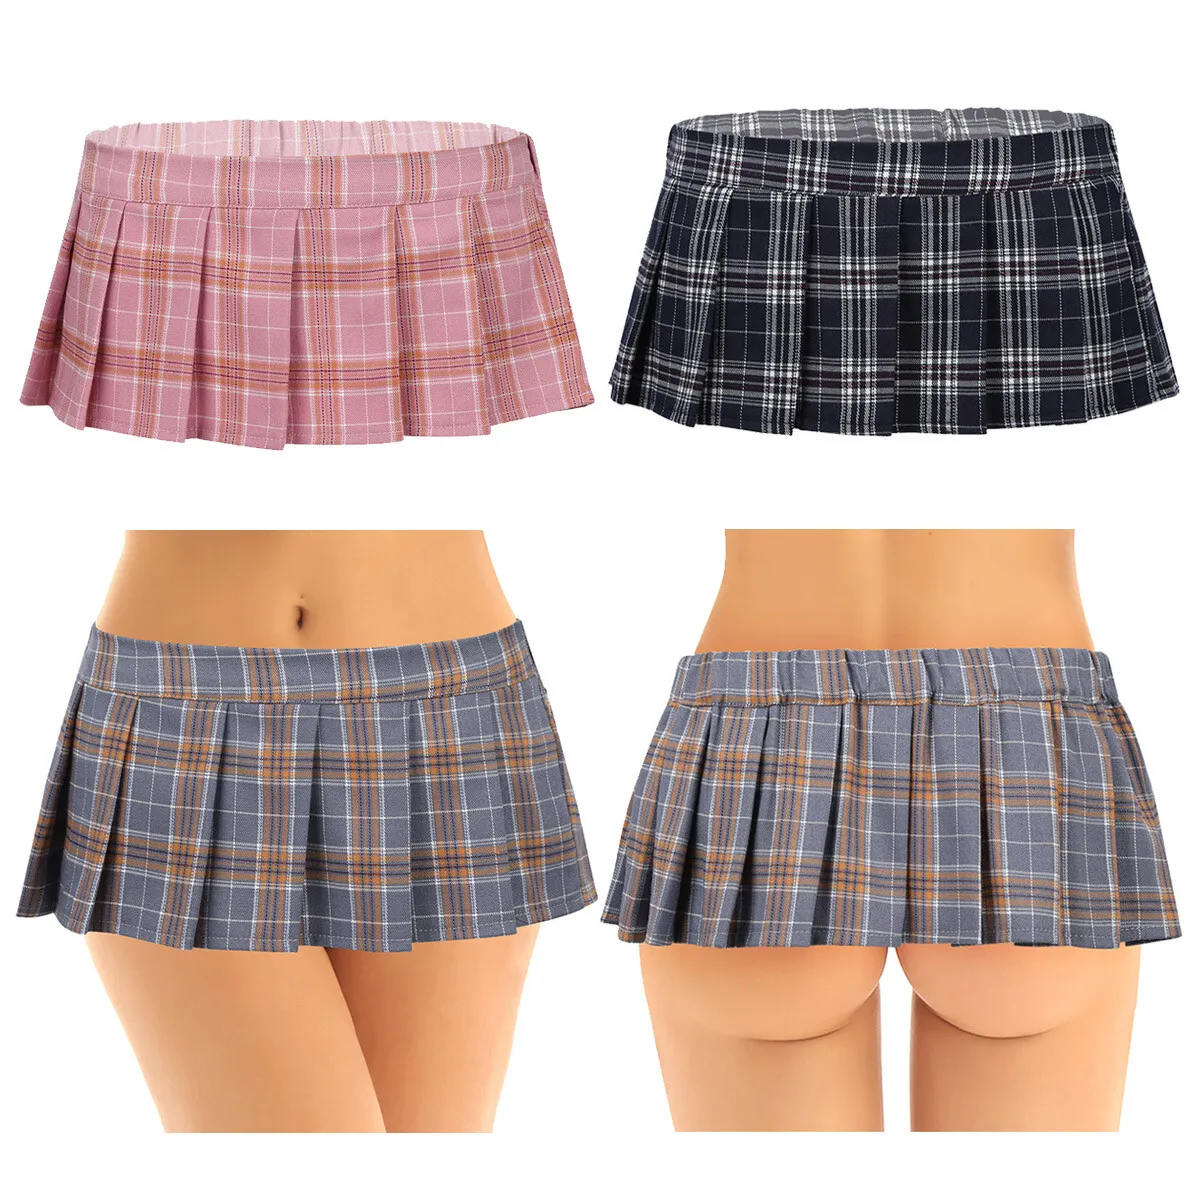 daniel marthin recommends Japanese Girls Short Skirts